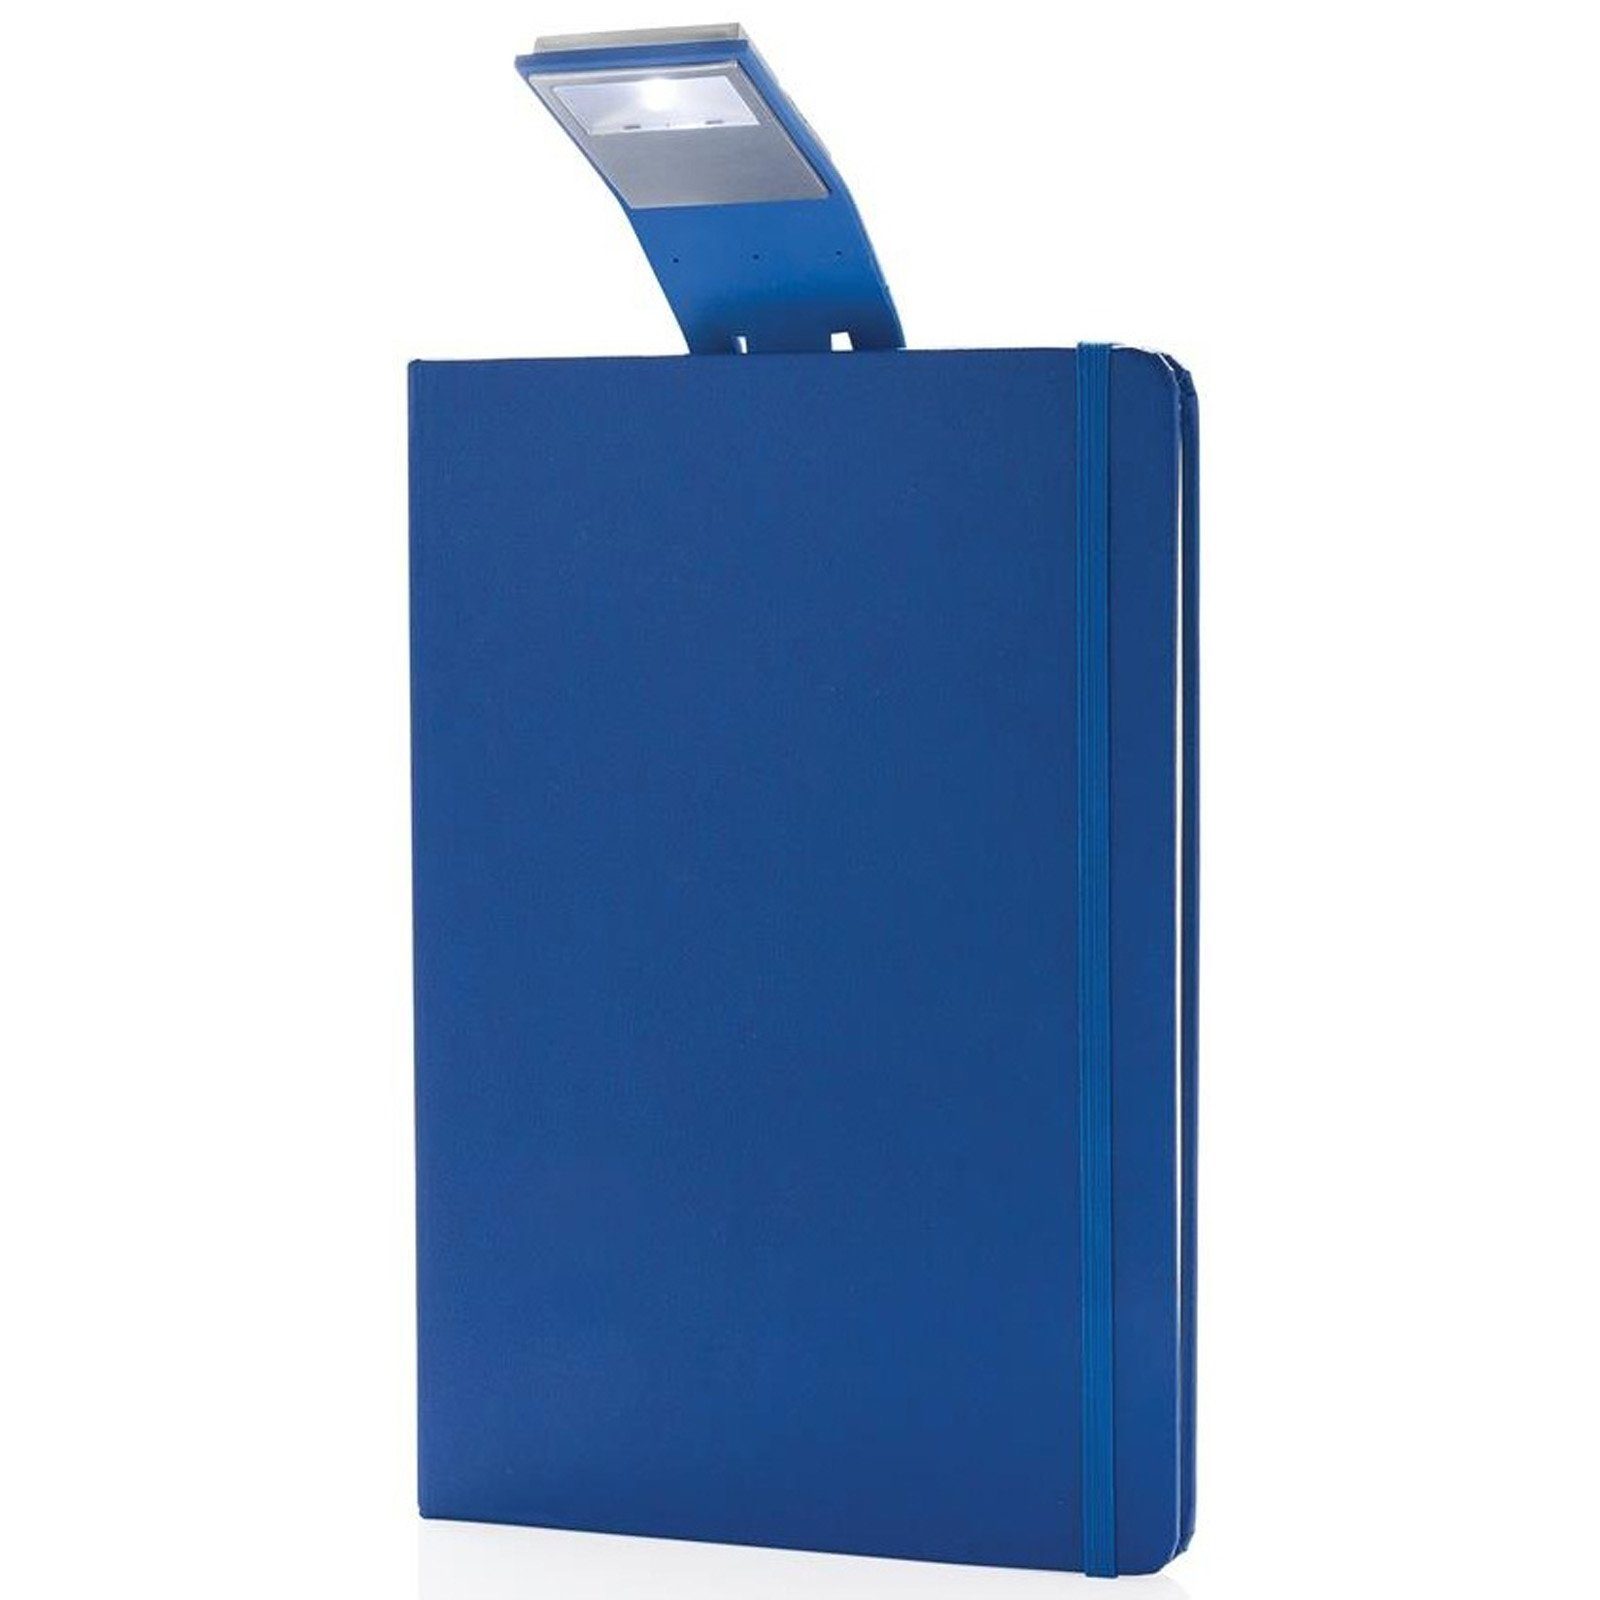 XD Collection Notizbuch Notizblock A5 mit Hardcover Leselampe 160 cremeweiße Seiten Liniert, mit LED Lesezeichen & Gummiband blau | Notizbücher